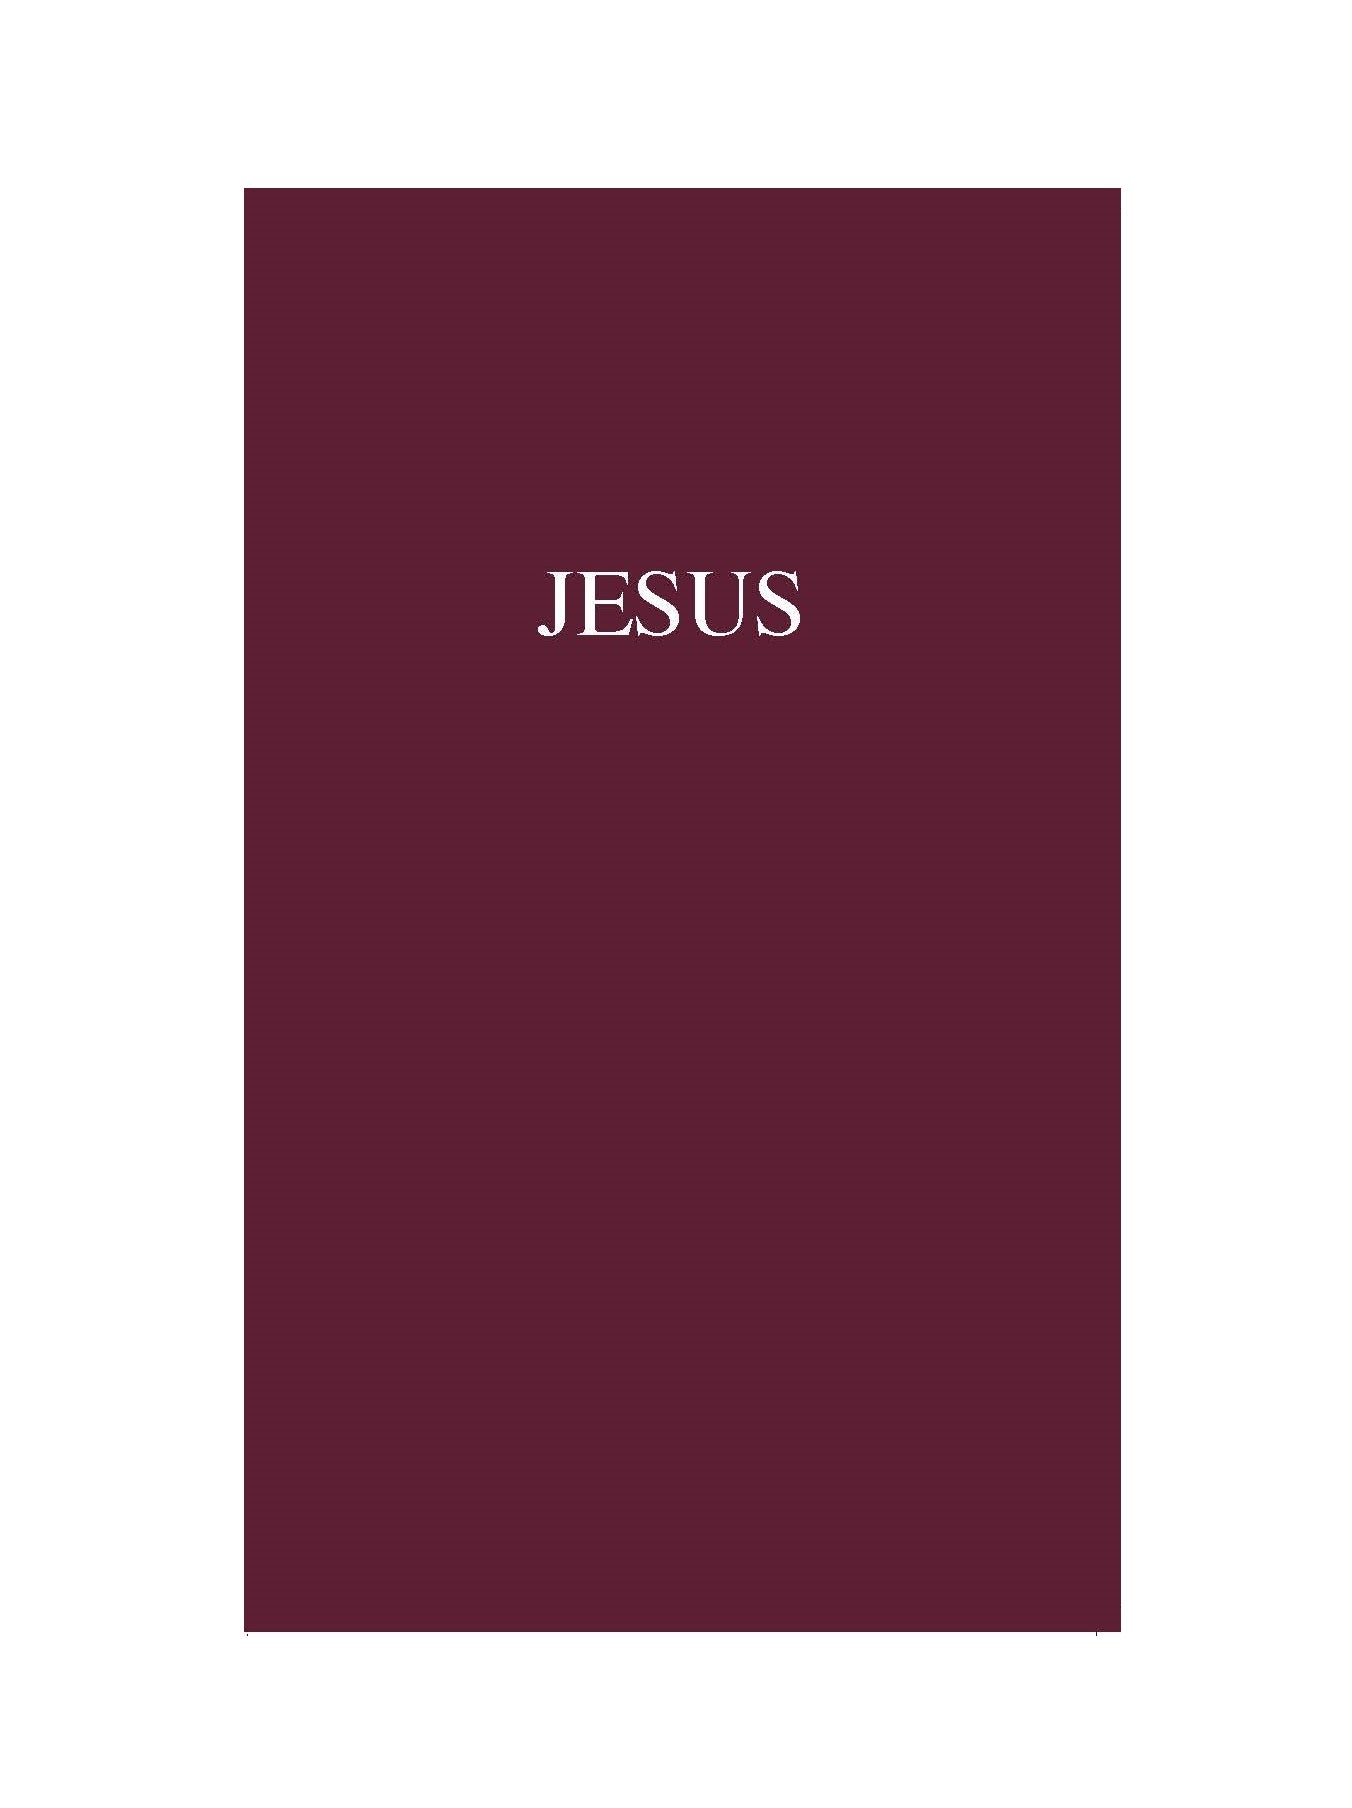 La vida y enseñanzas de Jesús de Nazaret - Impresión bajo demanda